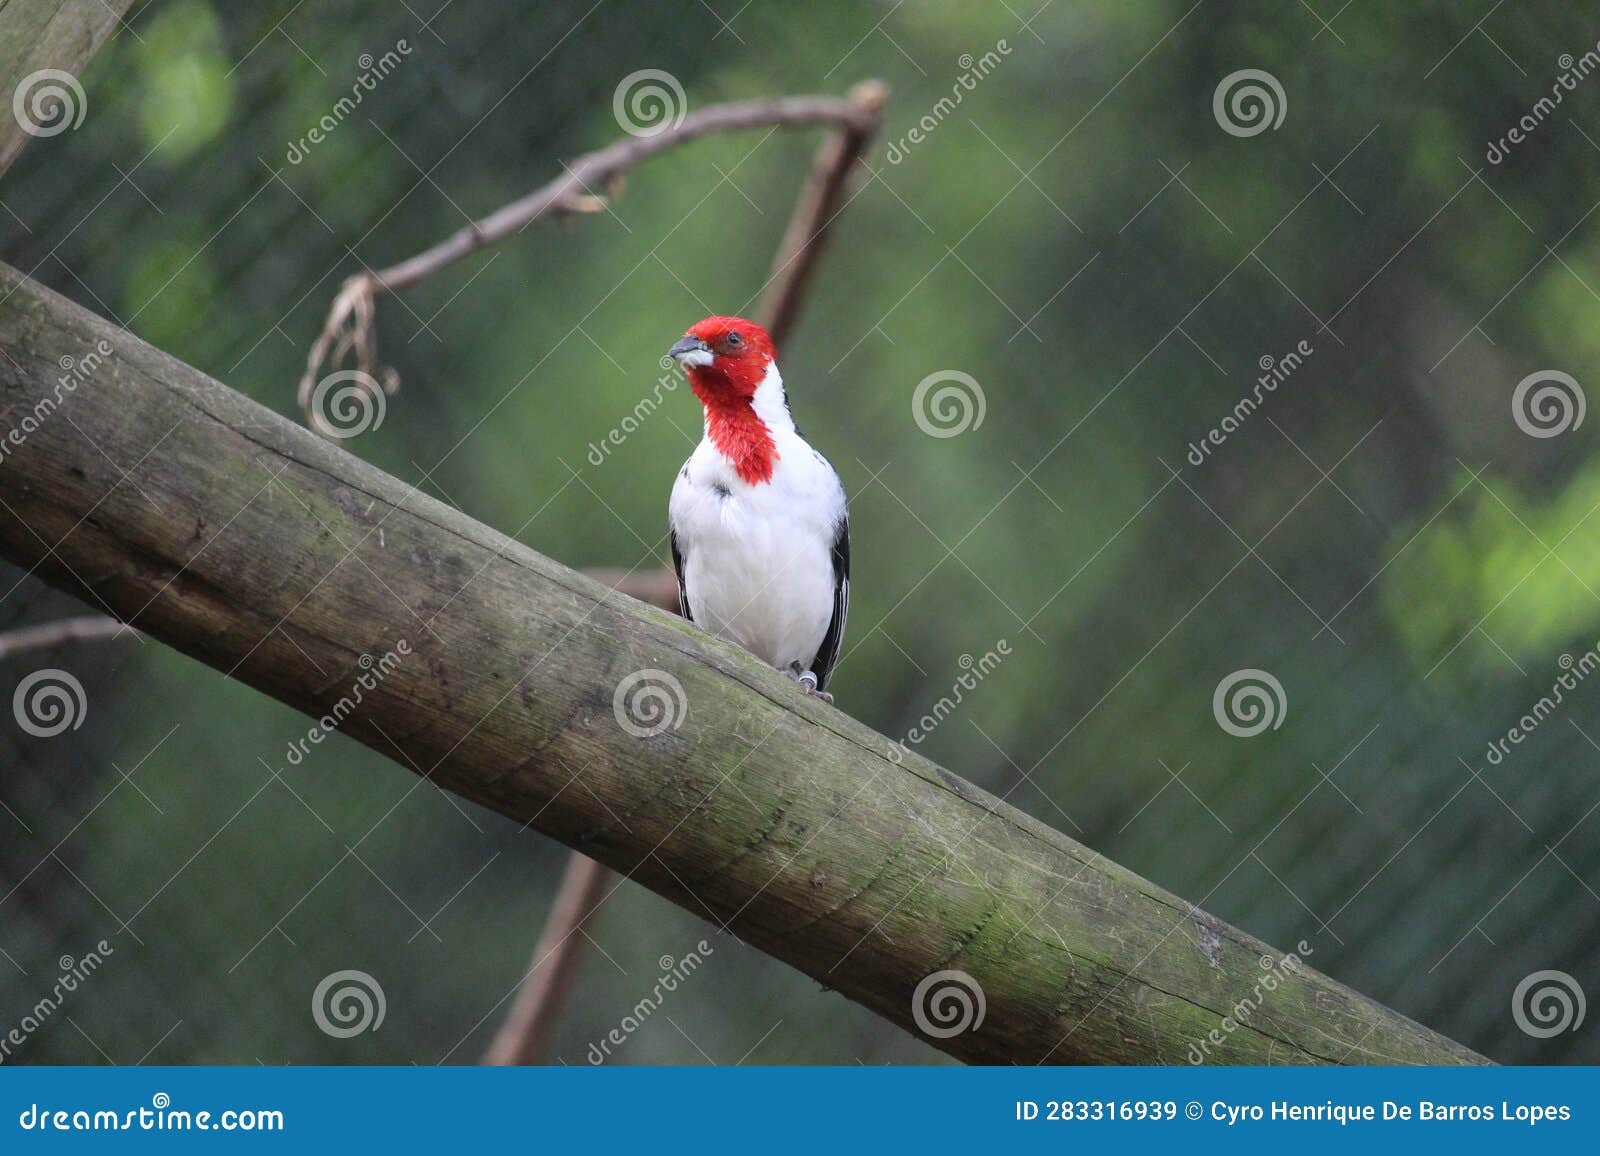 a cardinal bird standing on a wood